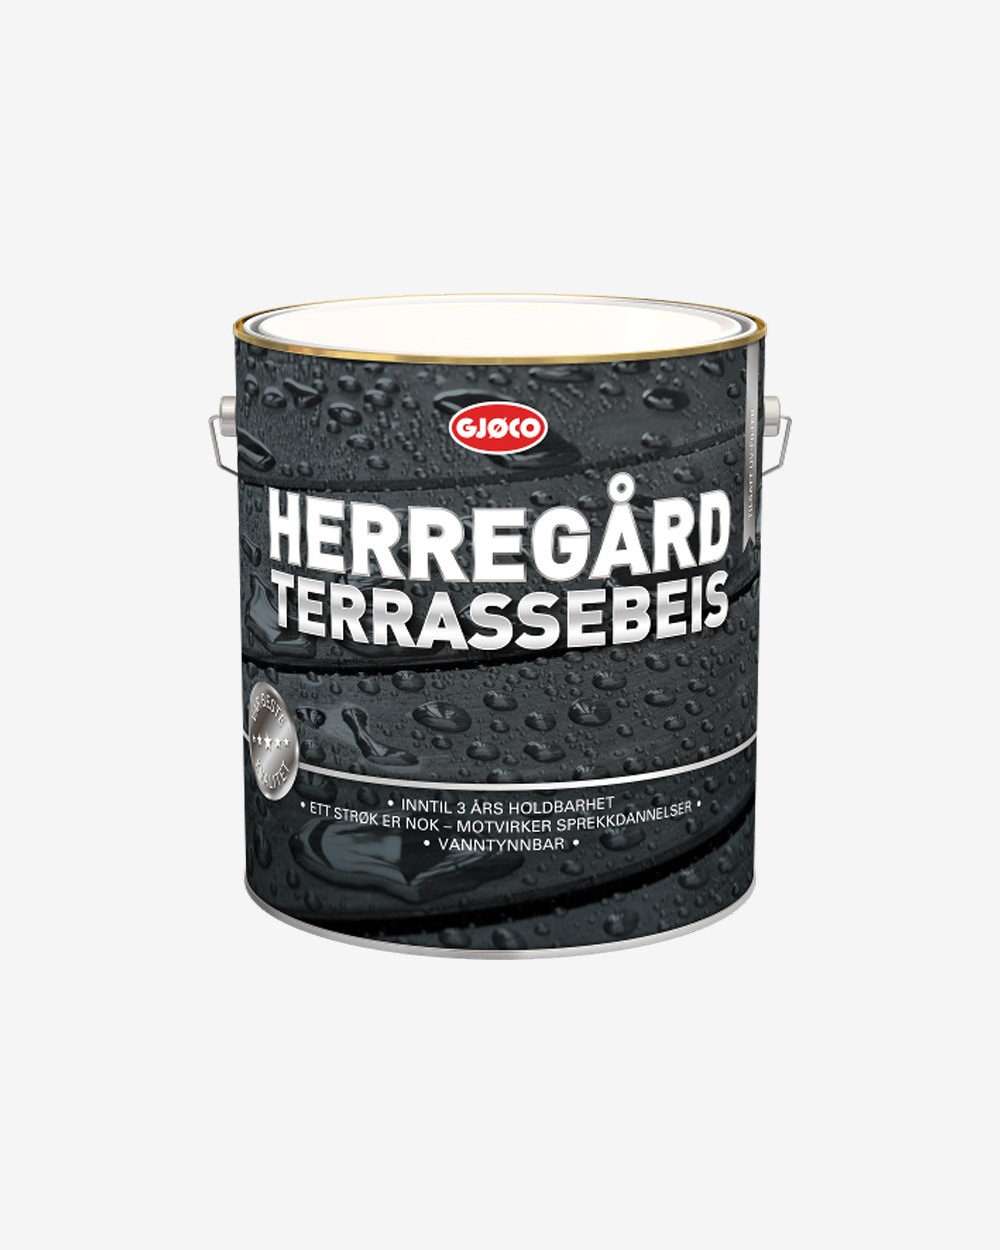 Se Gjøco Herregård Terrassebeis - 2.7 liter hos Picment.dk